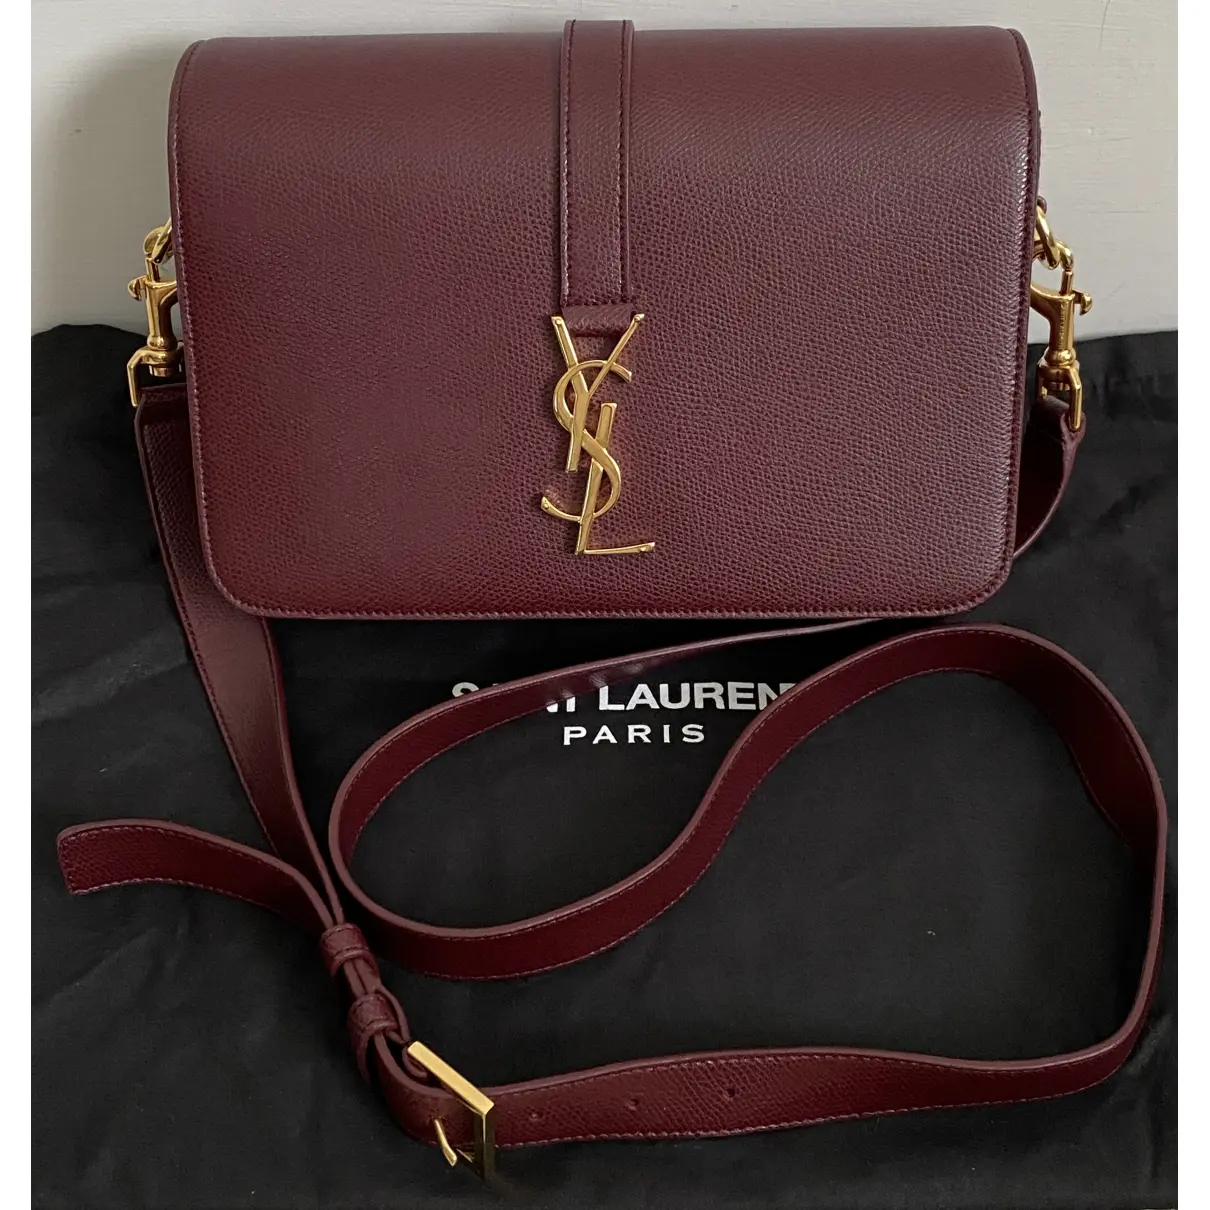 Université leather handbag Saint Laurent